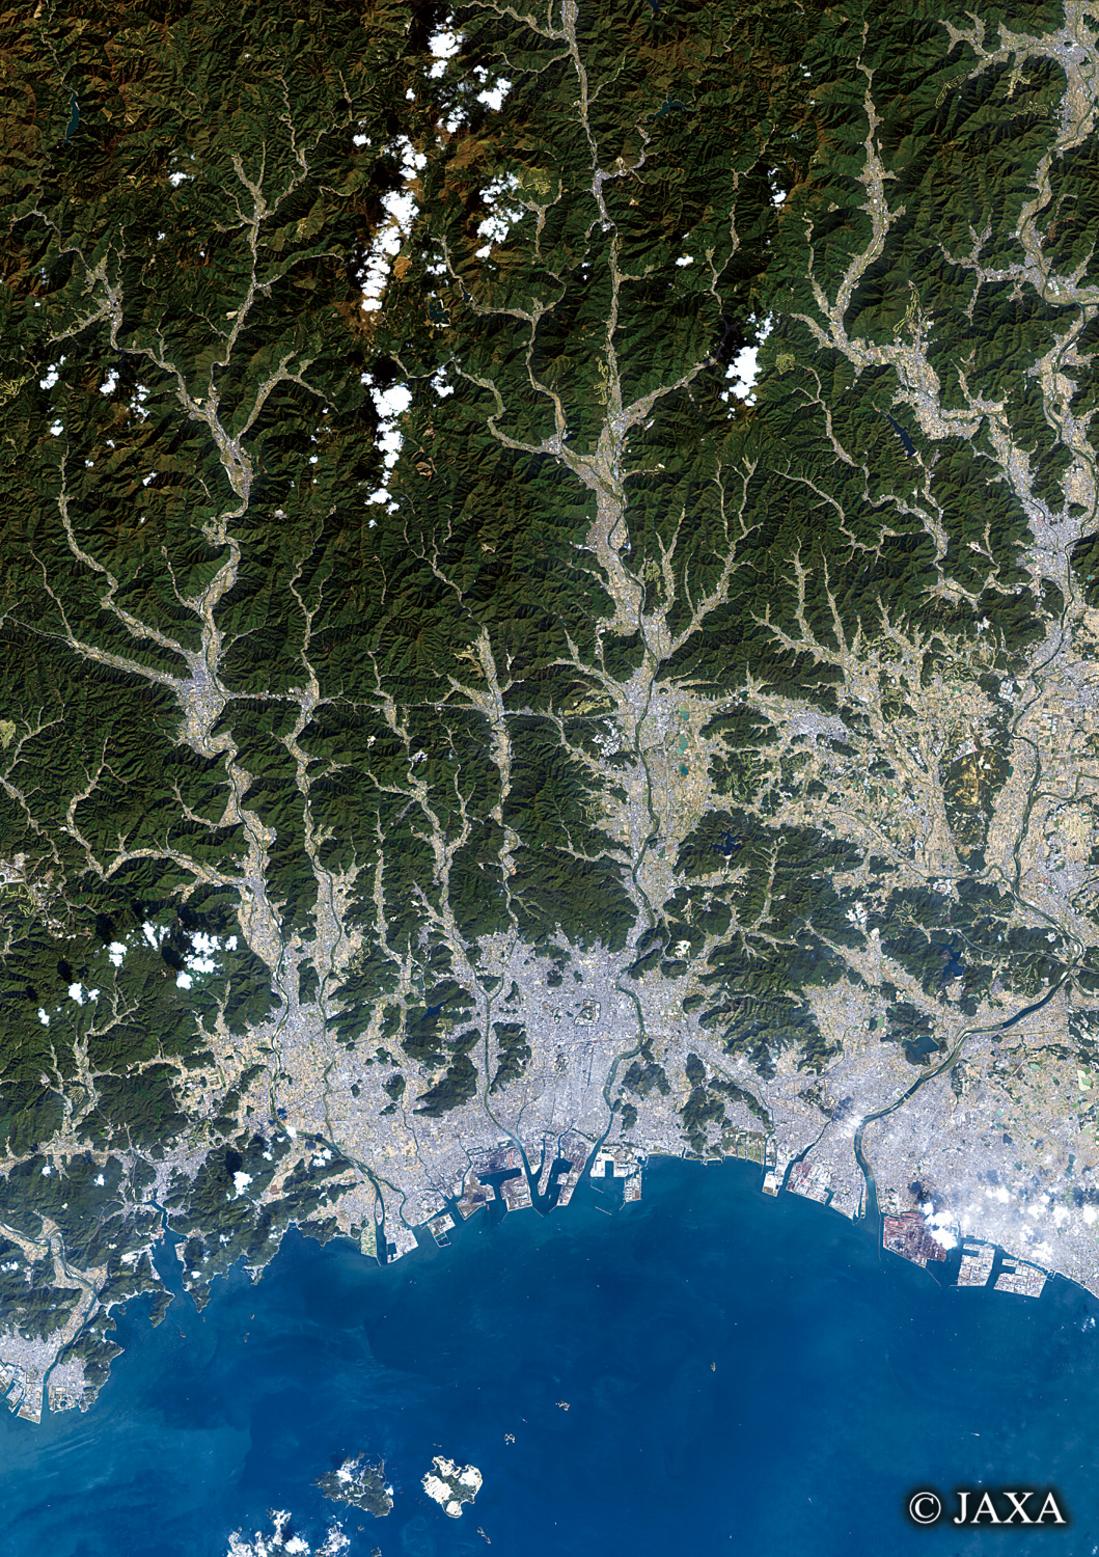 だいちから見た日本の都市 姫路市周辺辺:衛星画像